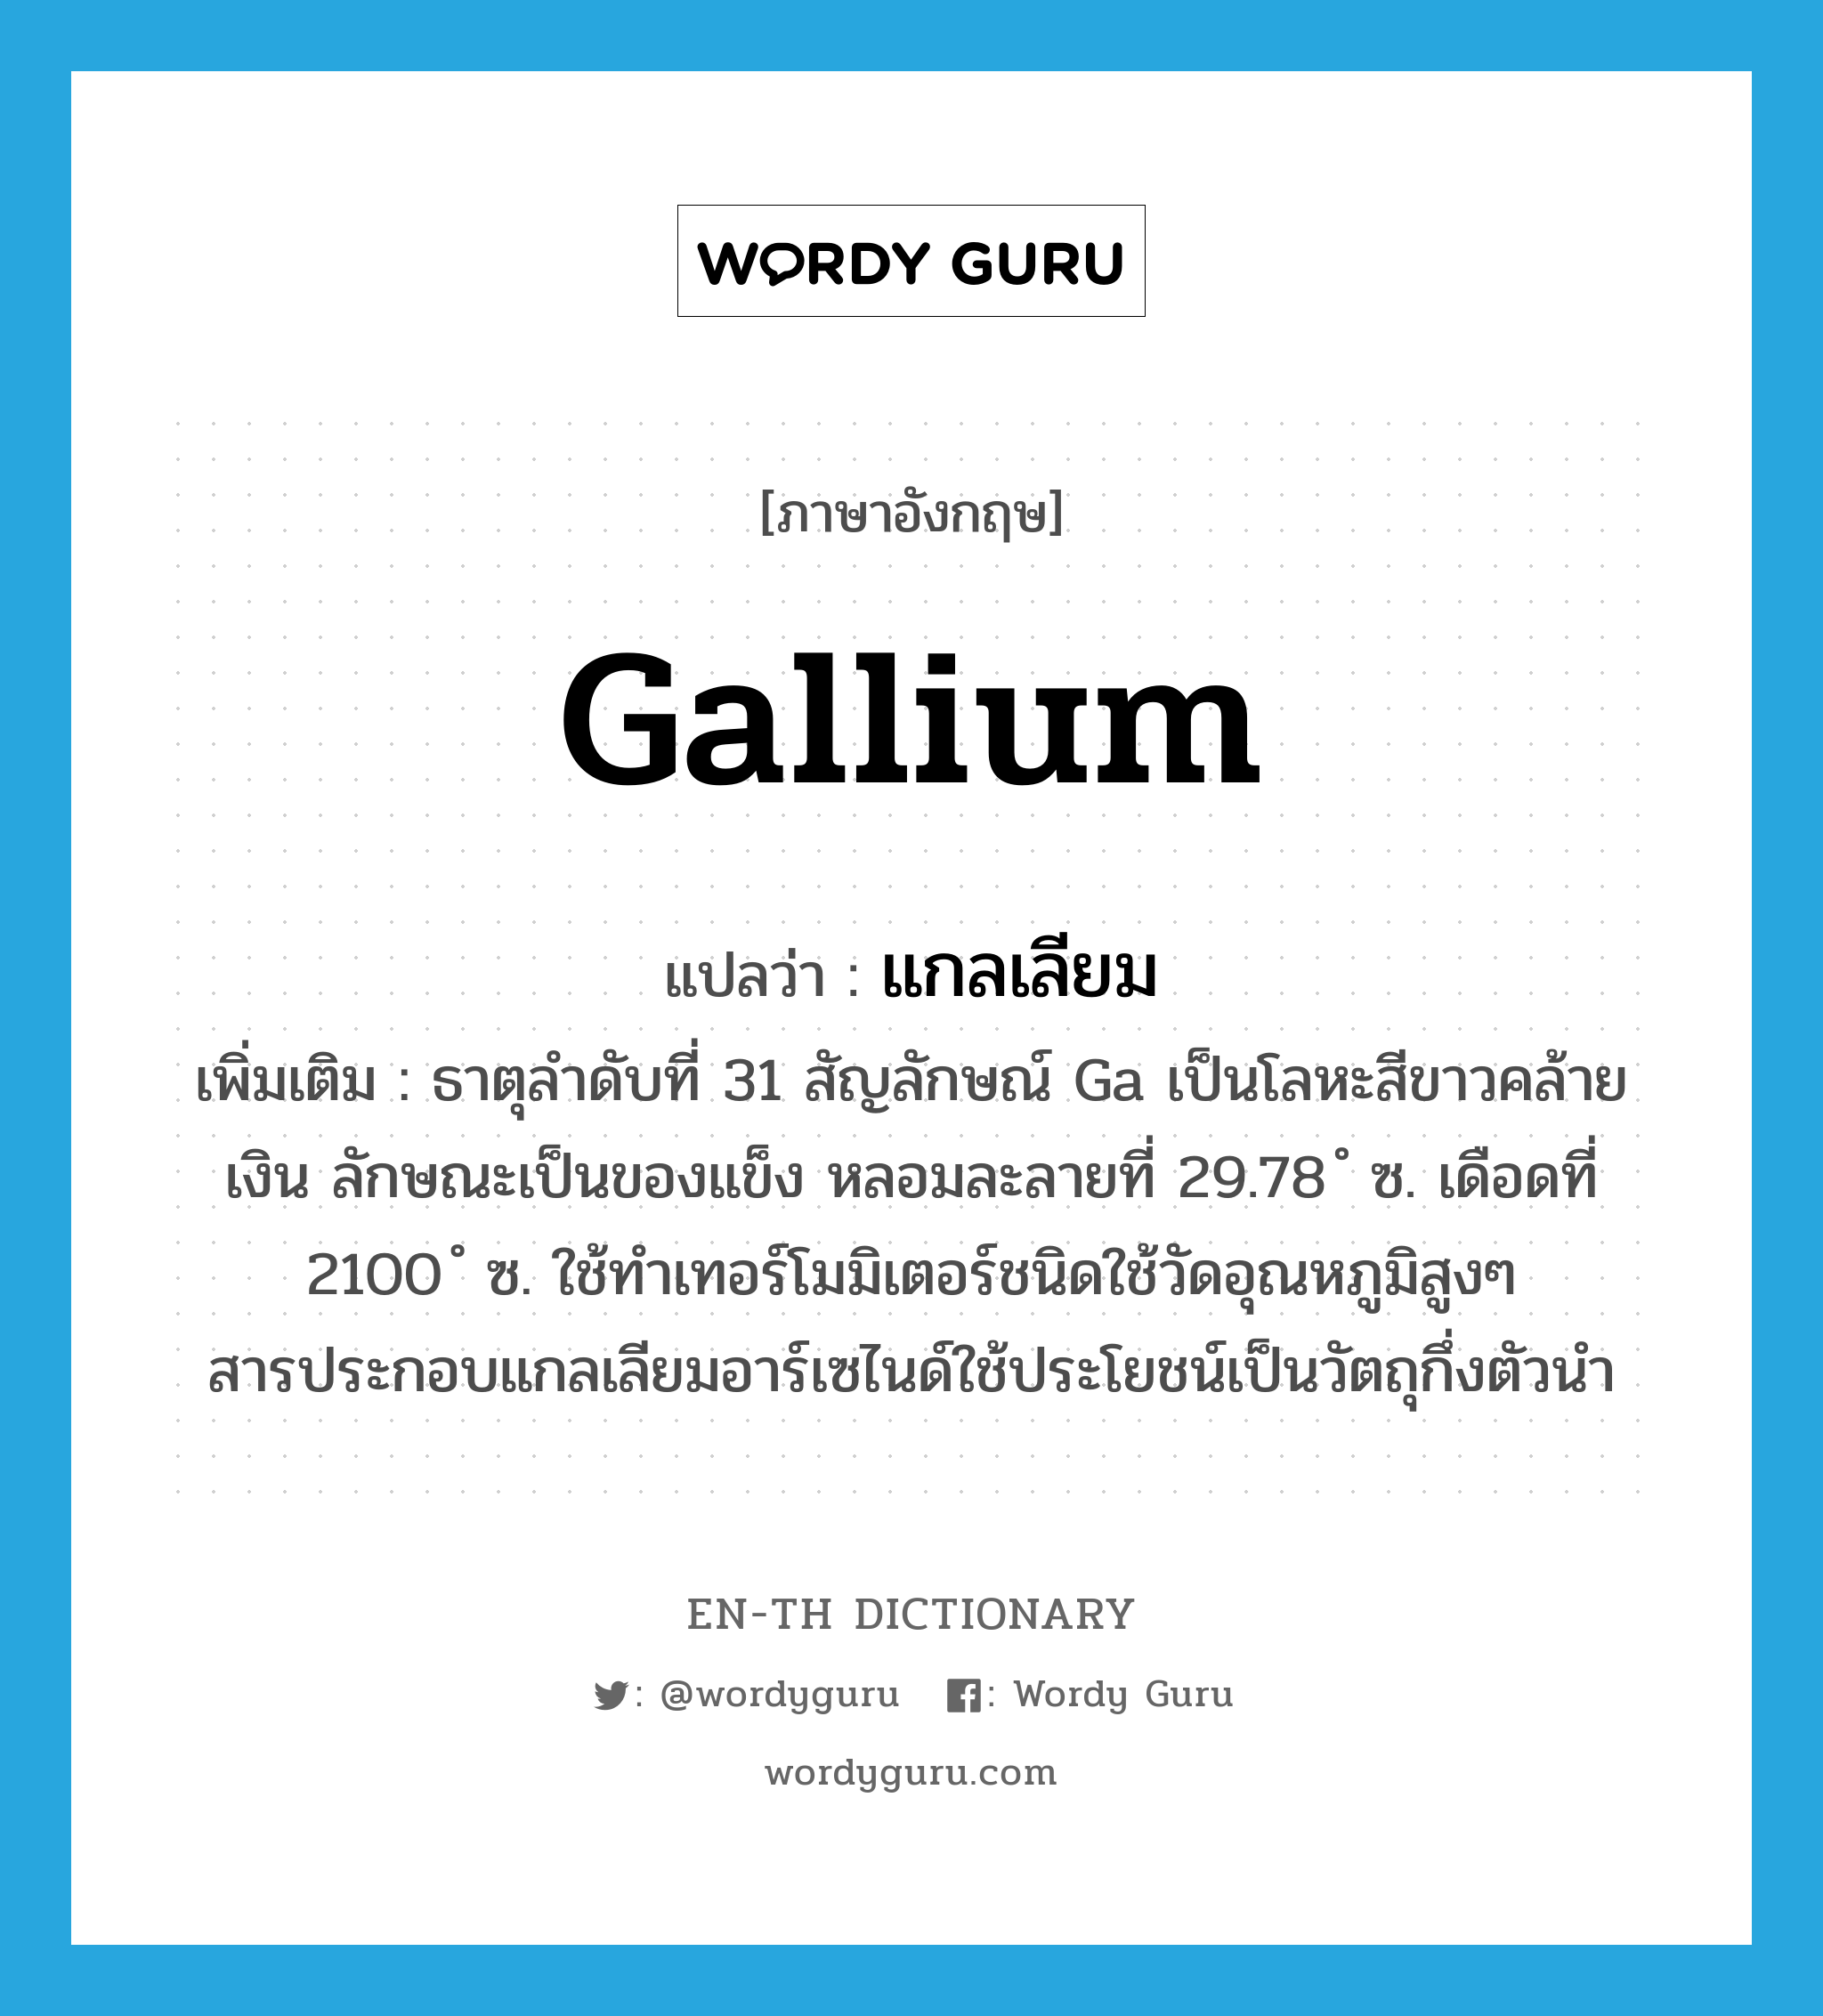 gallium แปลว่า?, คำศัพท์ภาษาอังกฤษ gallium แปลว่า แกลเลียม ประเภท N เพิ่มเติม ธาตุลำดับที่ 31 สัญลักษณ์ Ga เป็นโลหะสีขาวคล้ายเงิน ลักษณะเป็นของแข็ง หลอมละลายที่ 29.78 ํ ซ. เดือดที่ 2100 ํ ซ. ใช้ทำเทอร์โมมิเตอร์ชนิดใช้วัดอุณหภูมิสูงๆ สารประกอบแกลเลียมอาร์เซไนด์ใช้ประโยชน์เป็นวัตถุกึ่งตัวนำ หมวด N